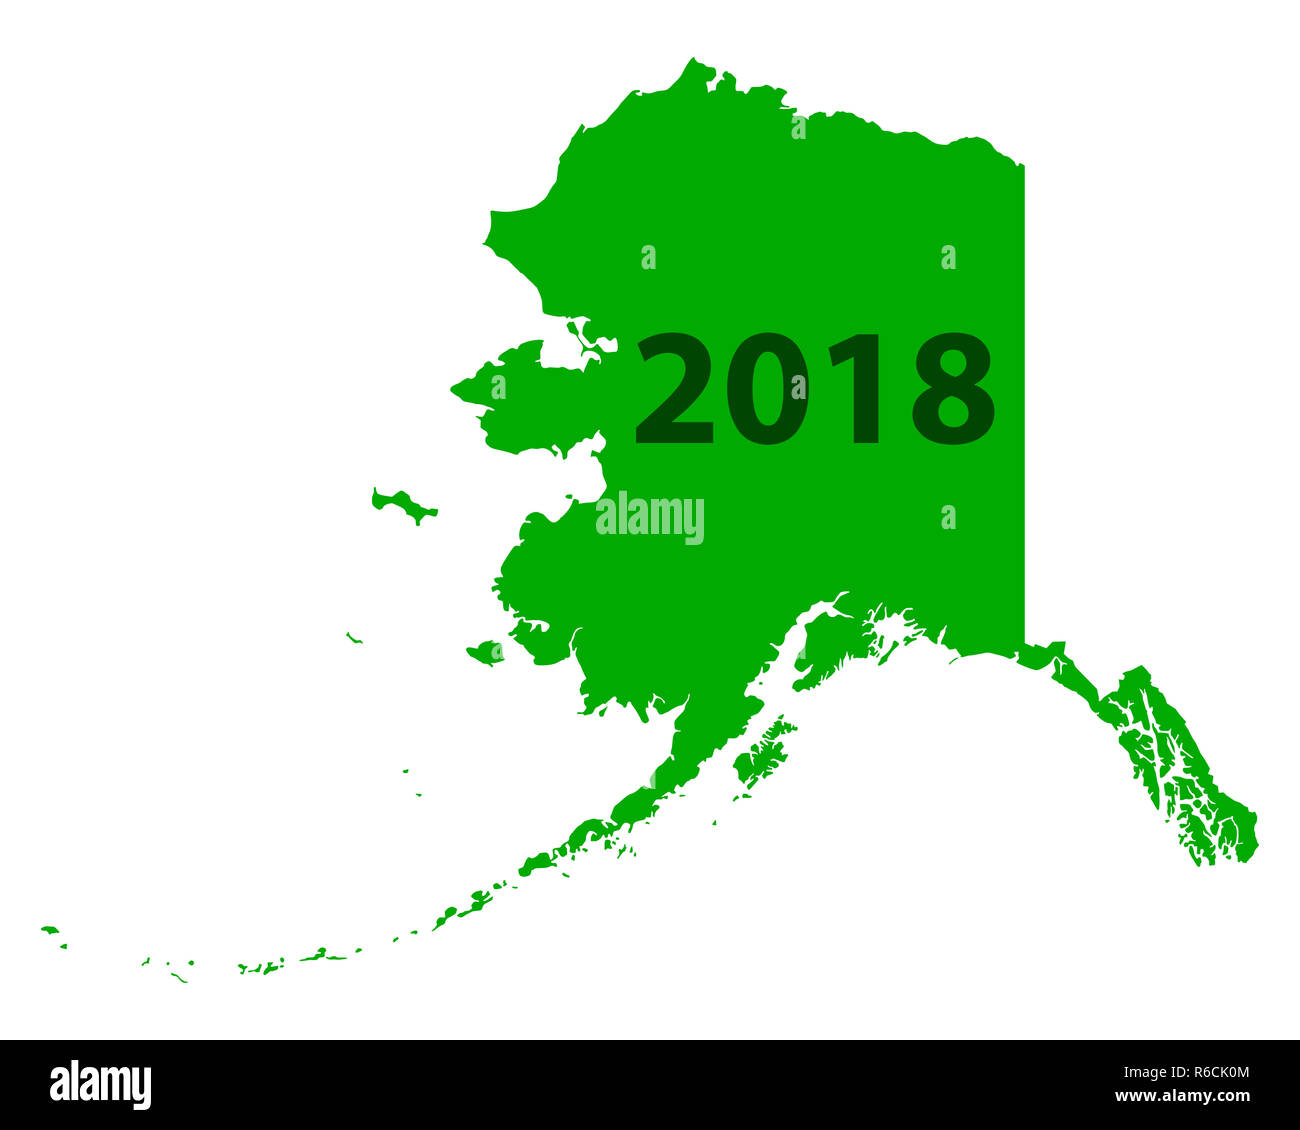 Map Of Alaska 2018 R6CK0M 